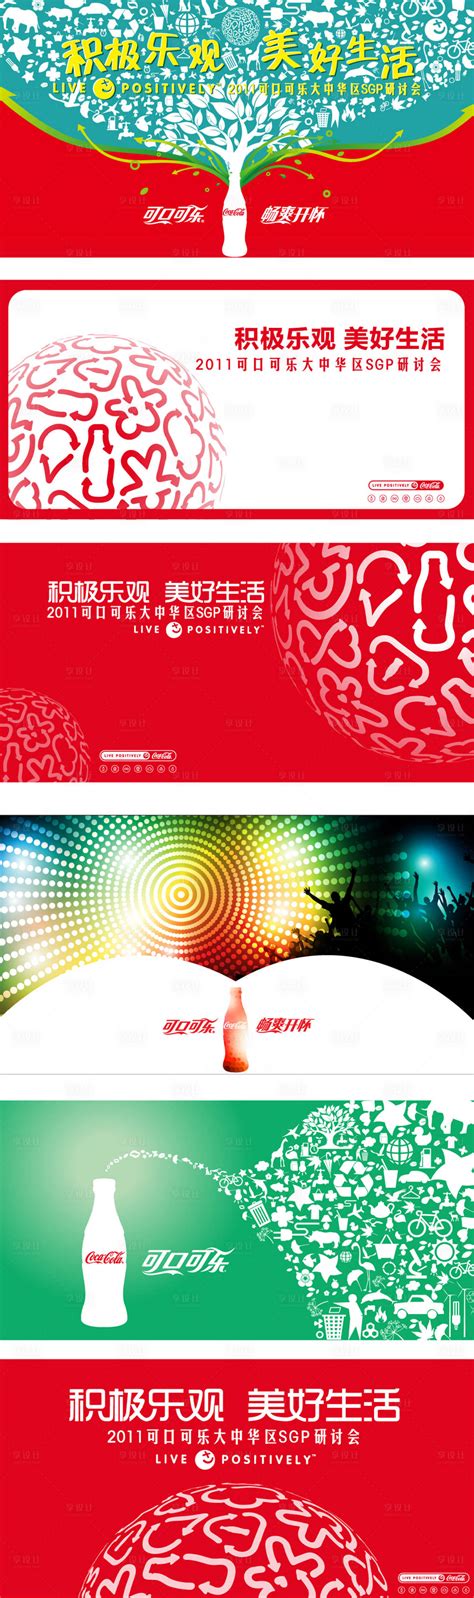 可口可乐海报设计PSD素材免费下载_红动网